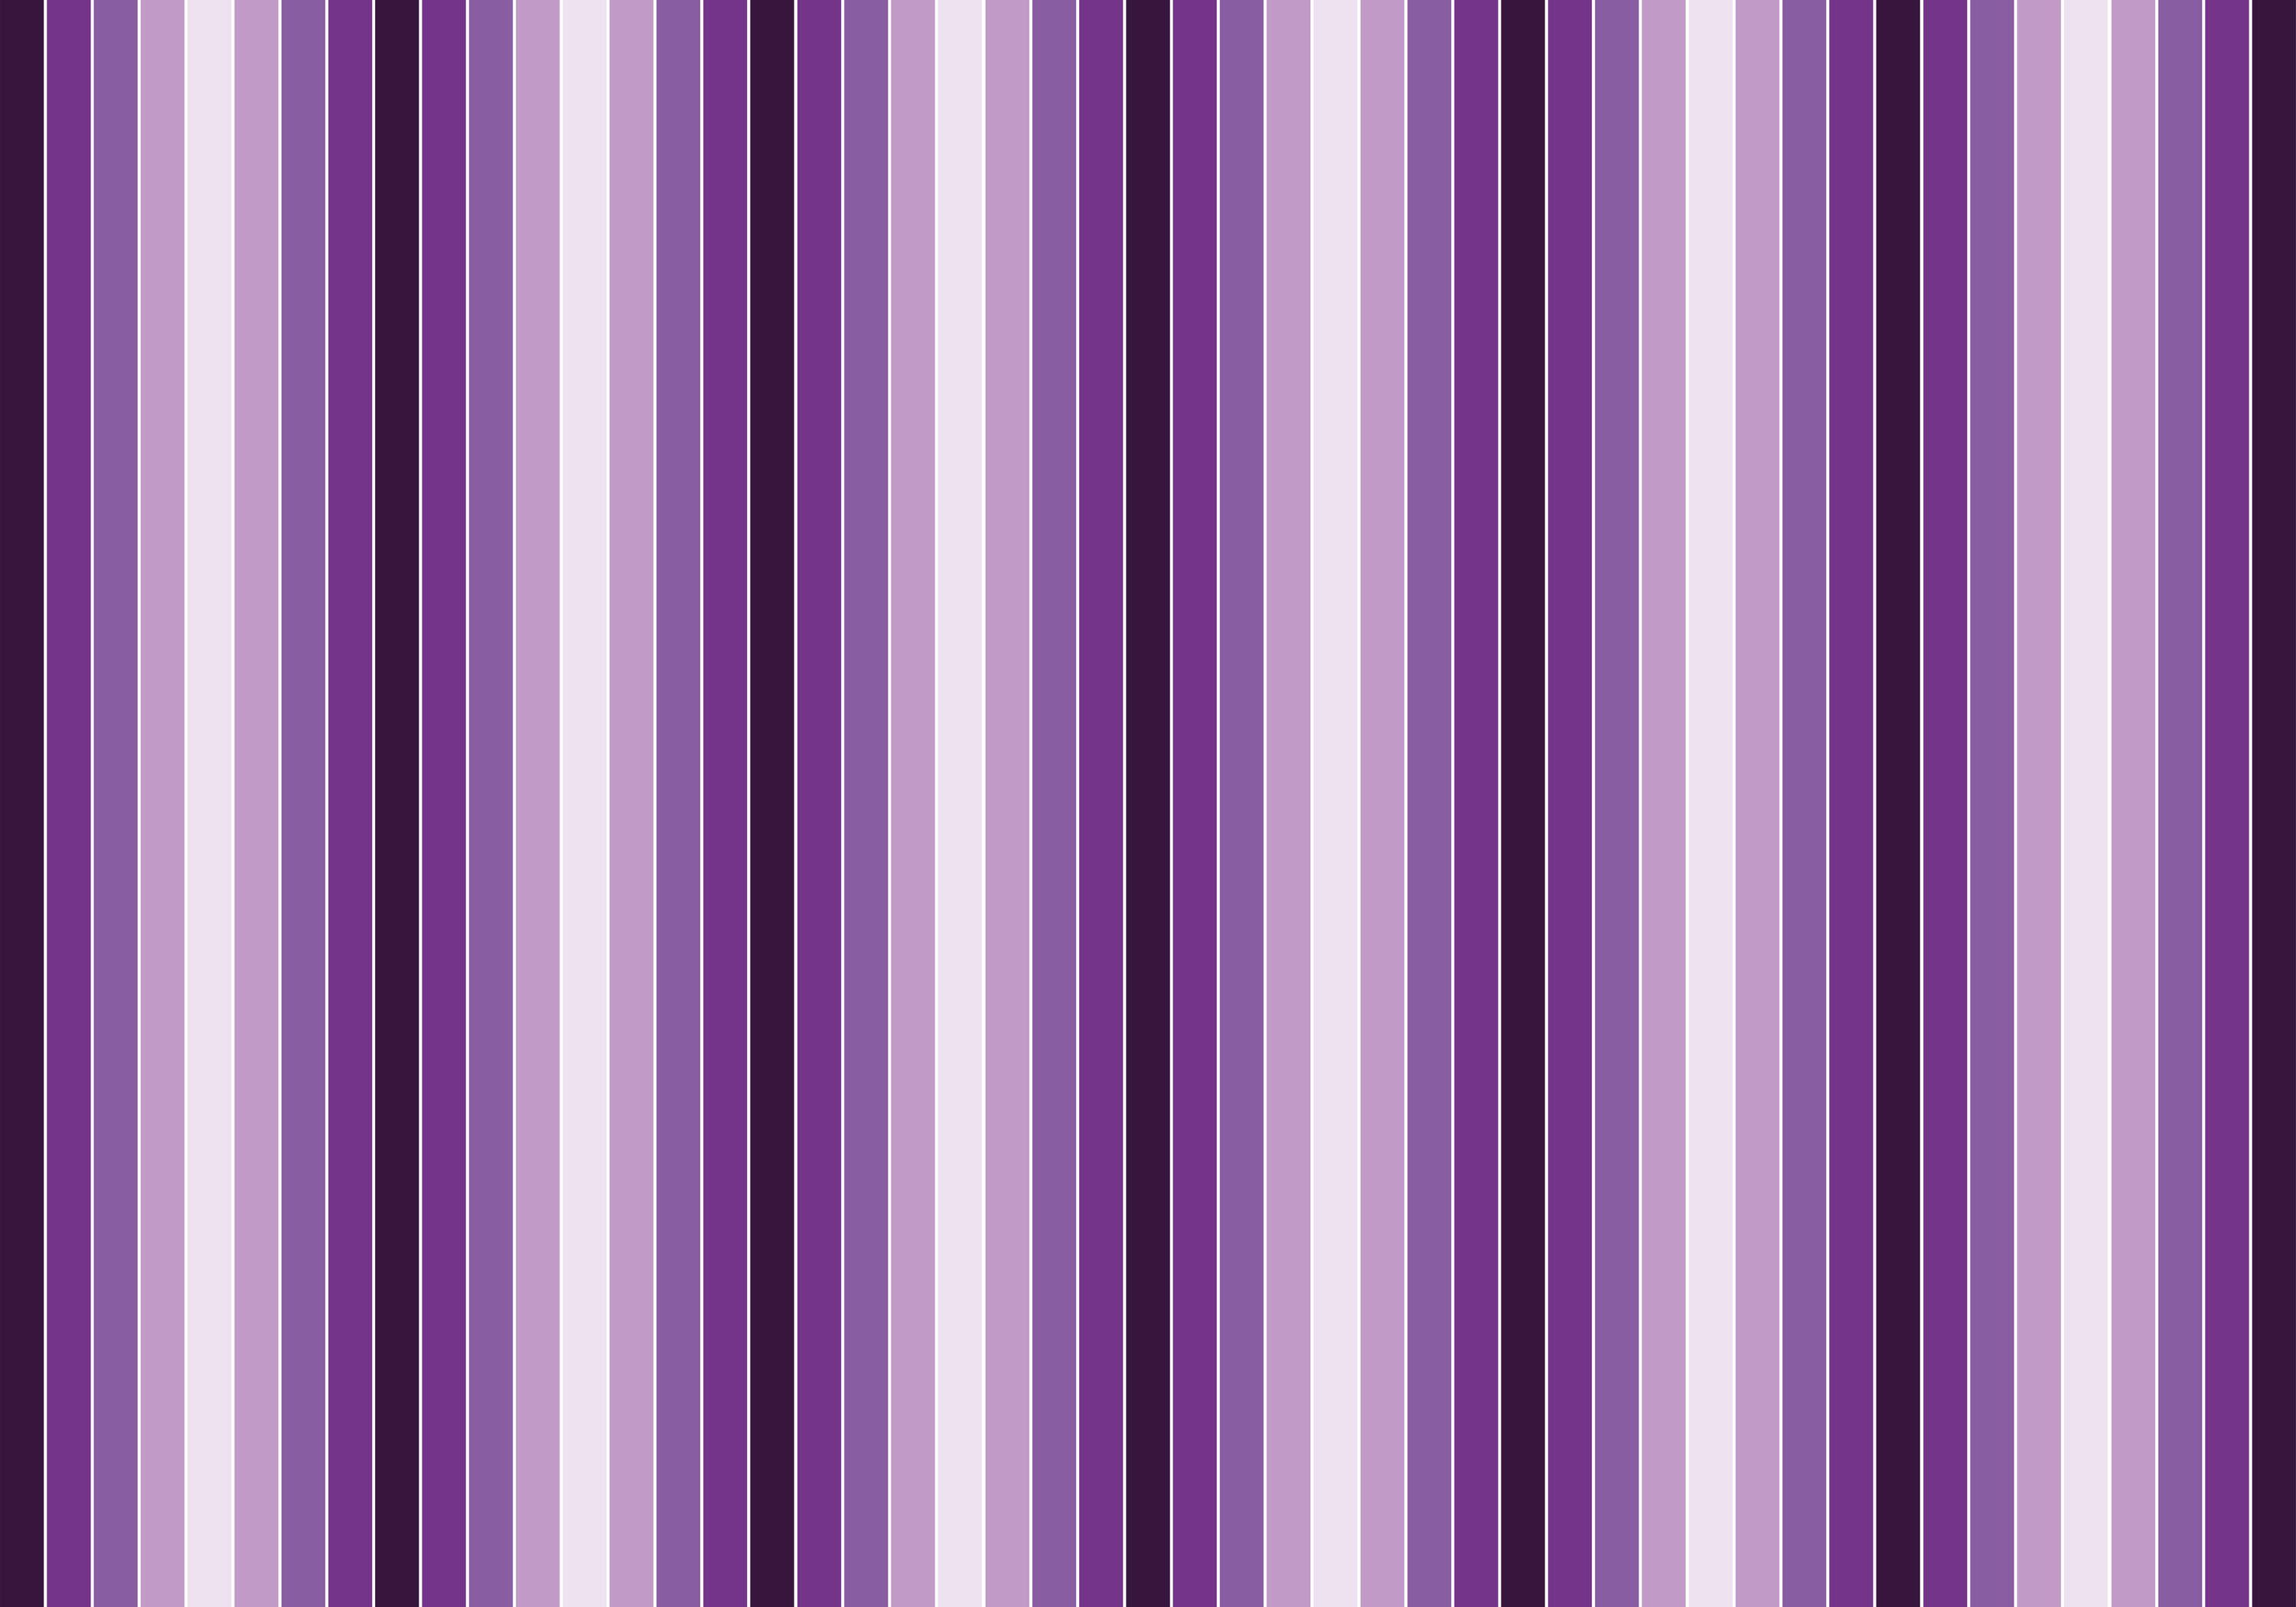 wandmotiv24 Fototapete Leuchtendes Violett Muster, glatt, Wandtapete, Motivtapete, matt, Vliestapete